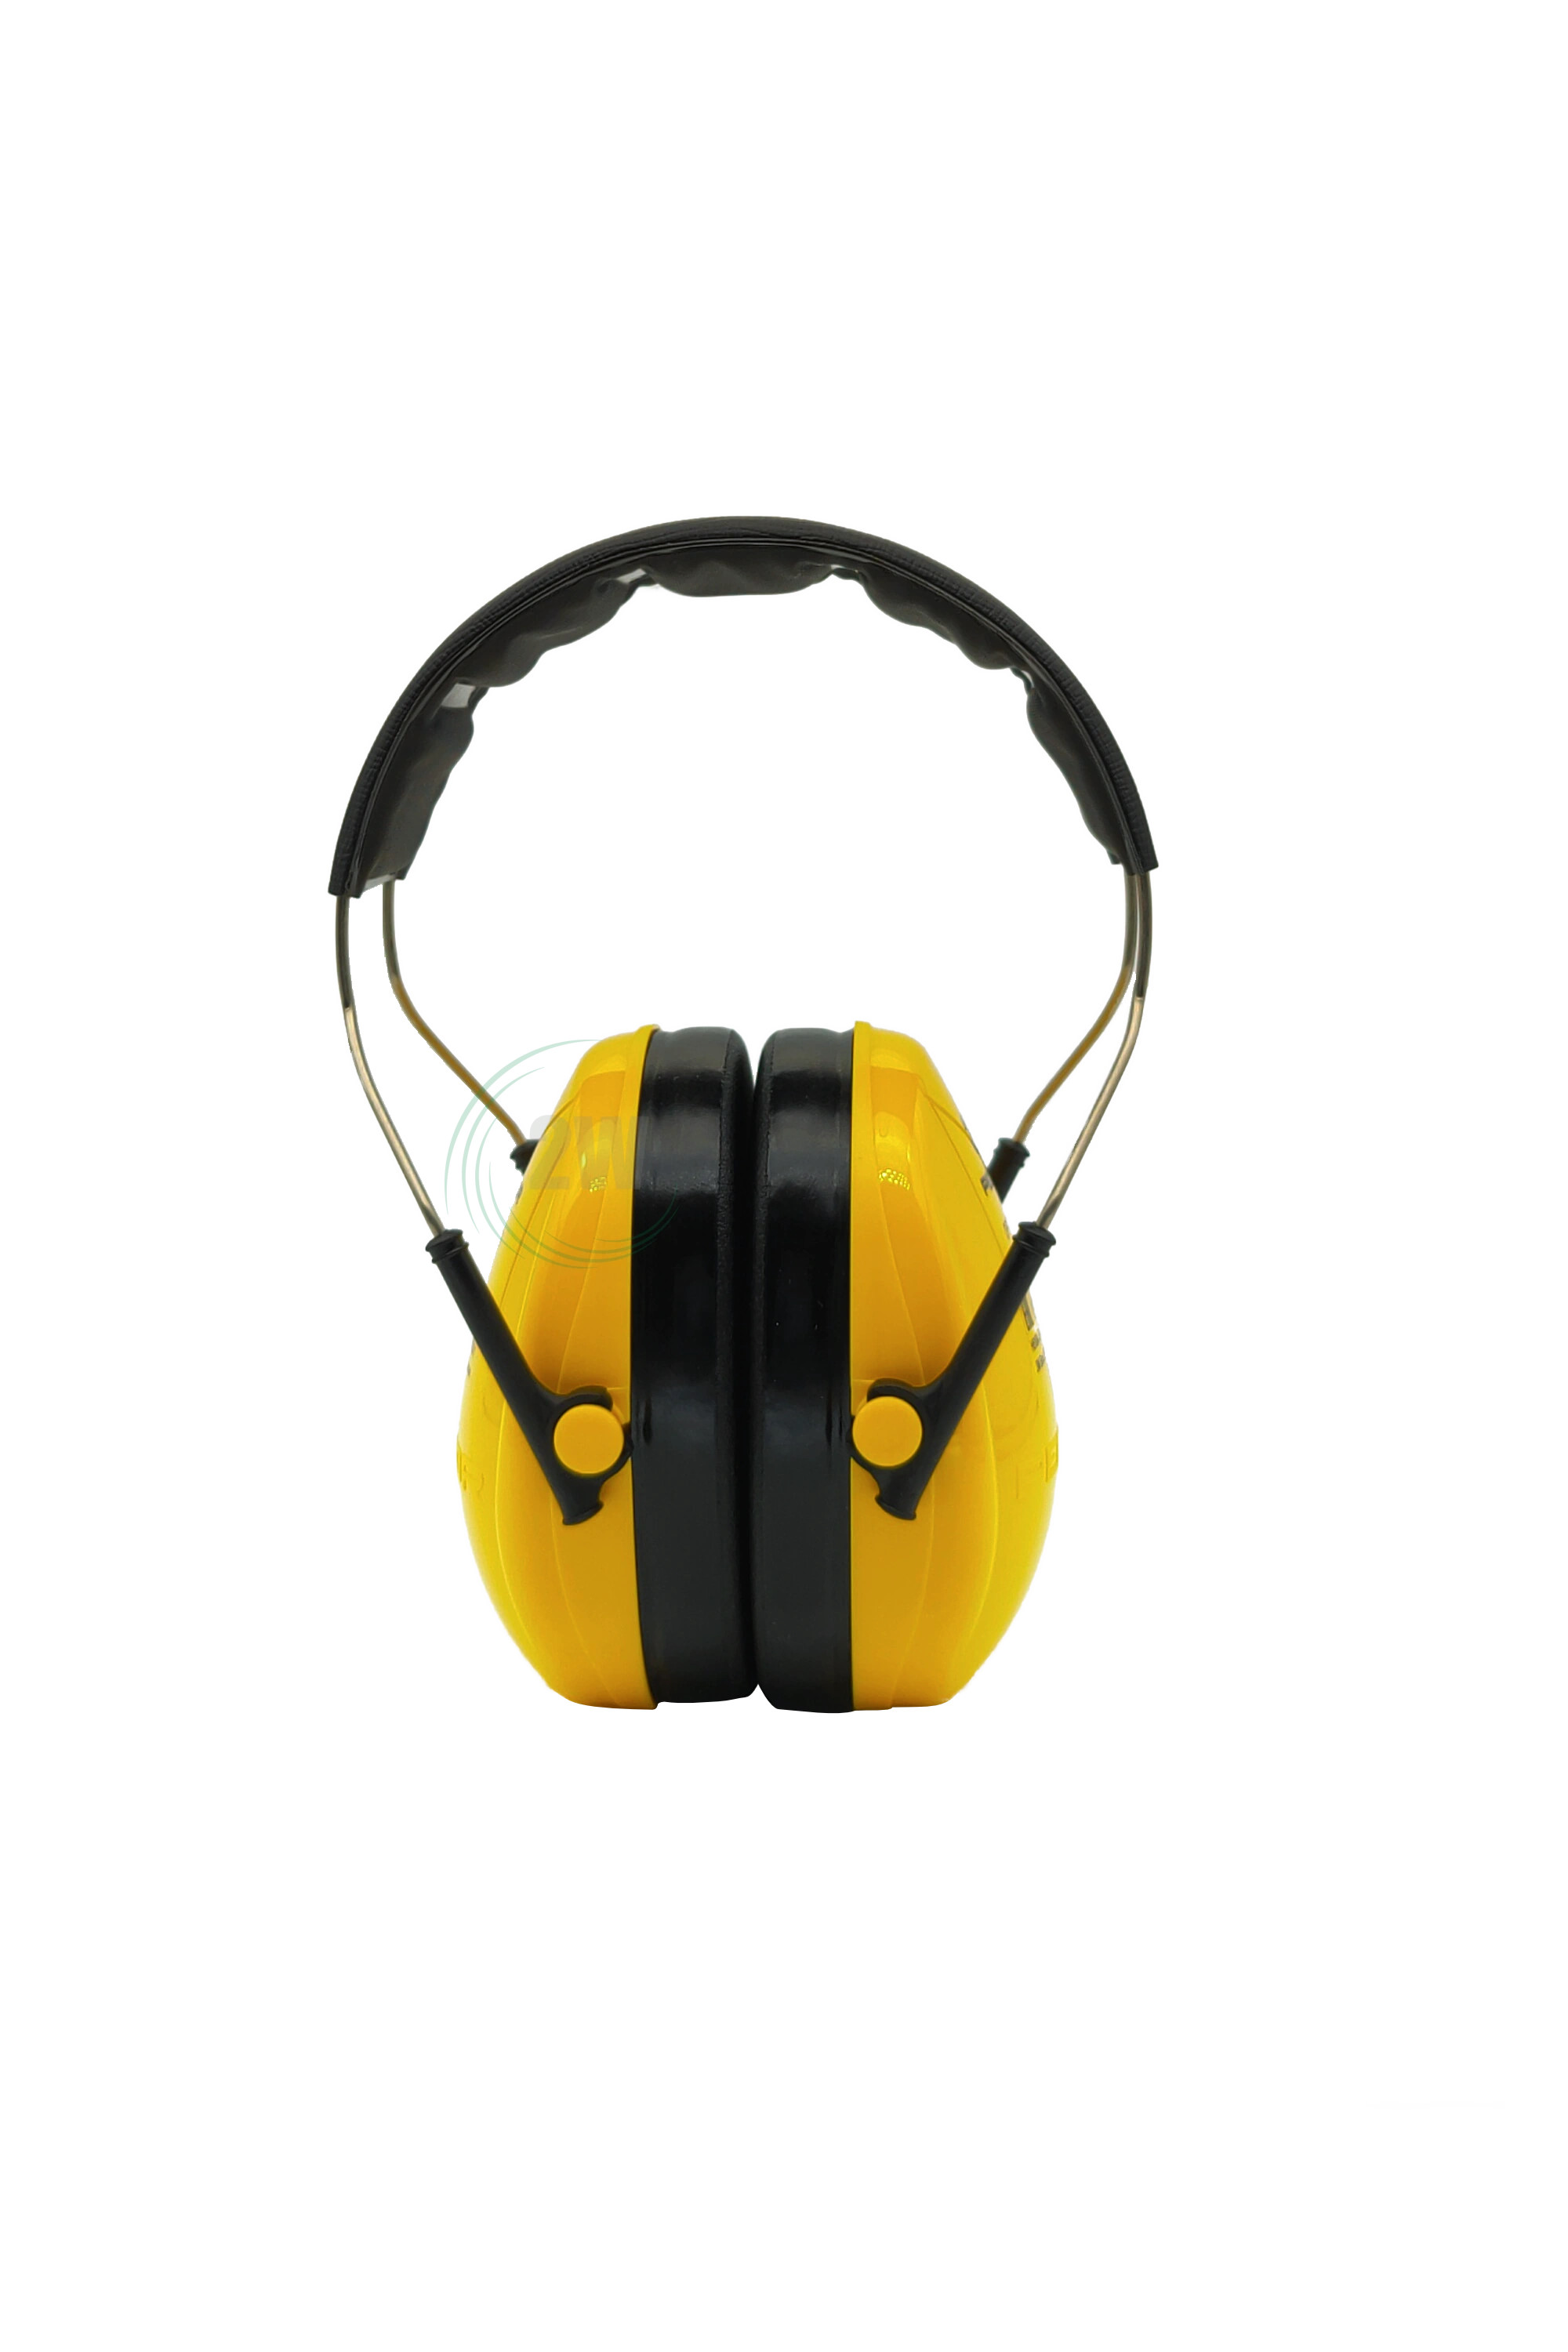 3M H510A-401-GU PELTOR Optime I Kapselgehörschützer 27 dB gelb Kopfbügel